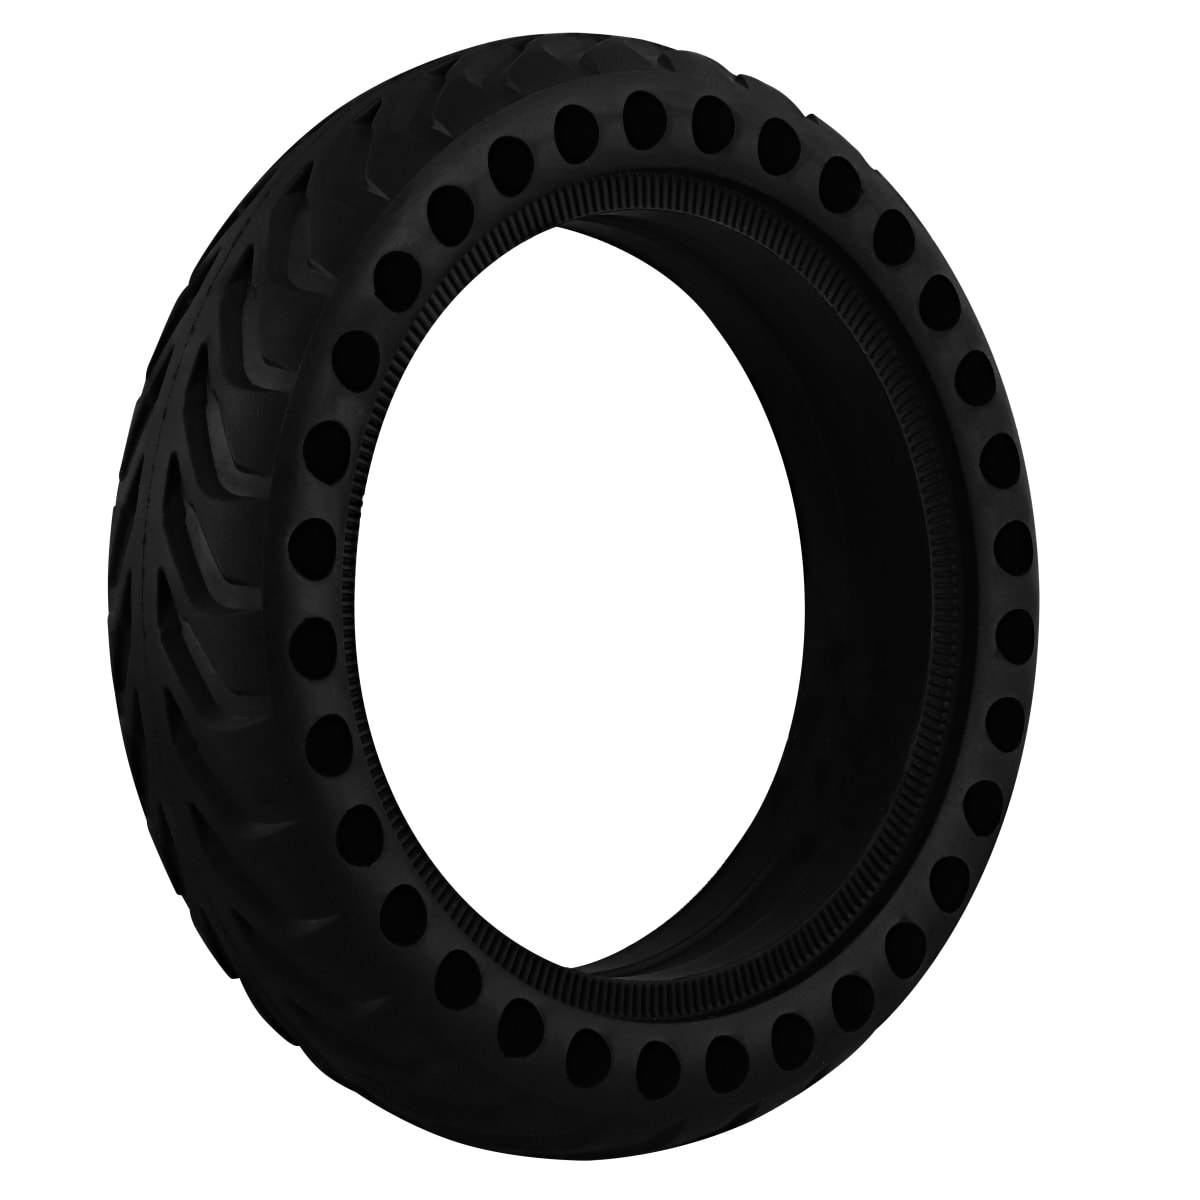 Neumático macizo de 8,5" para patinete eléctrico